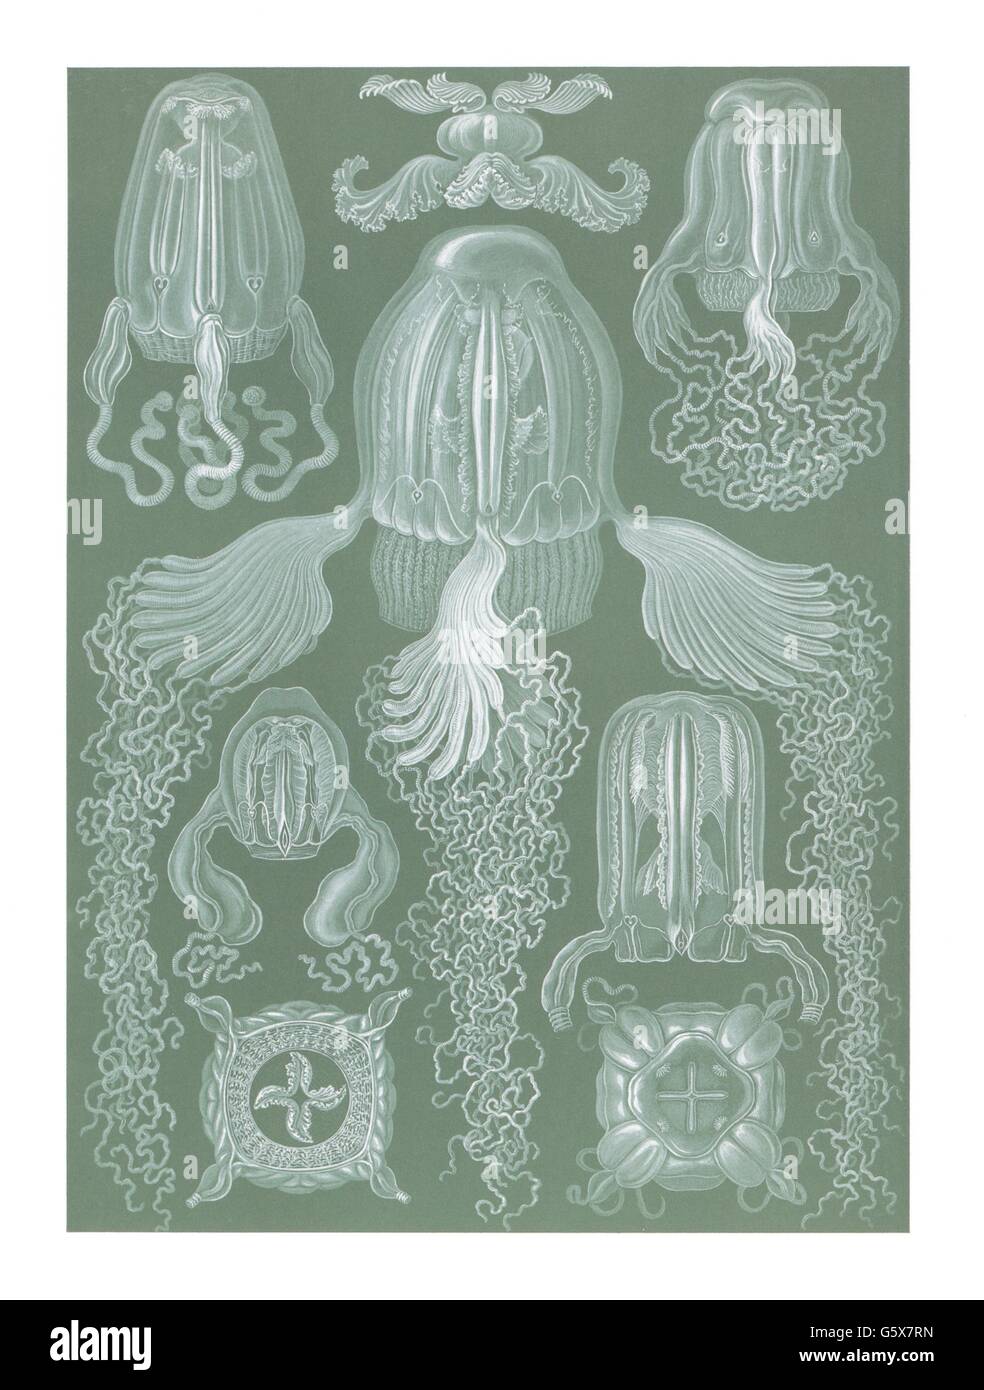 zoologie / animaux, cnidaria, meduses cubiques (Cubomedusae), lithographie de couleur, de: Ernst Haeckel, 'Kunstformen der Natur', Leipzig - Vienne, 1899 - 1904, droits additionnels-Clearences-non disponible Banque D'Images